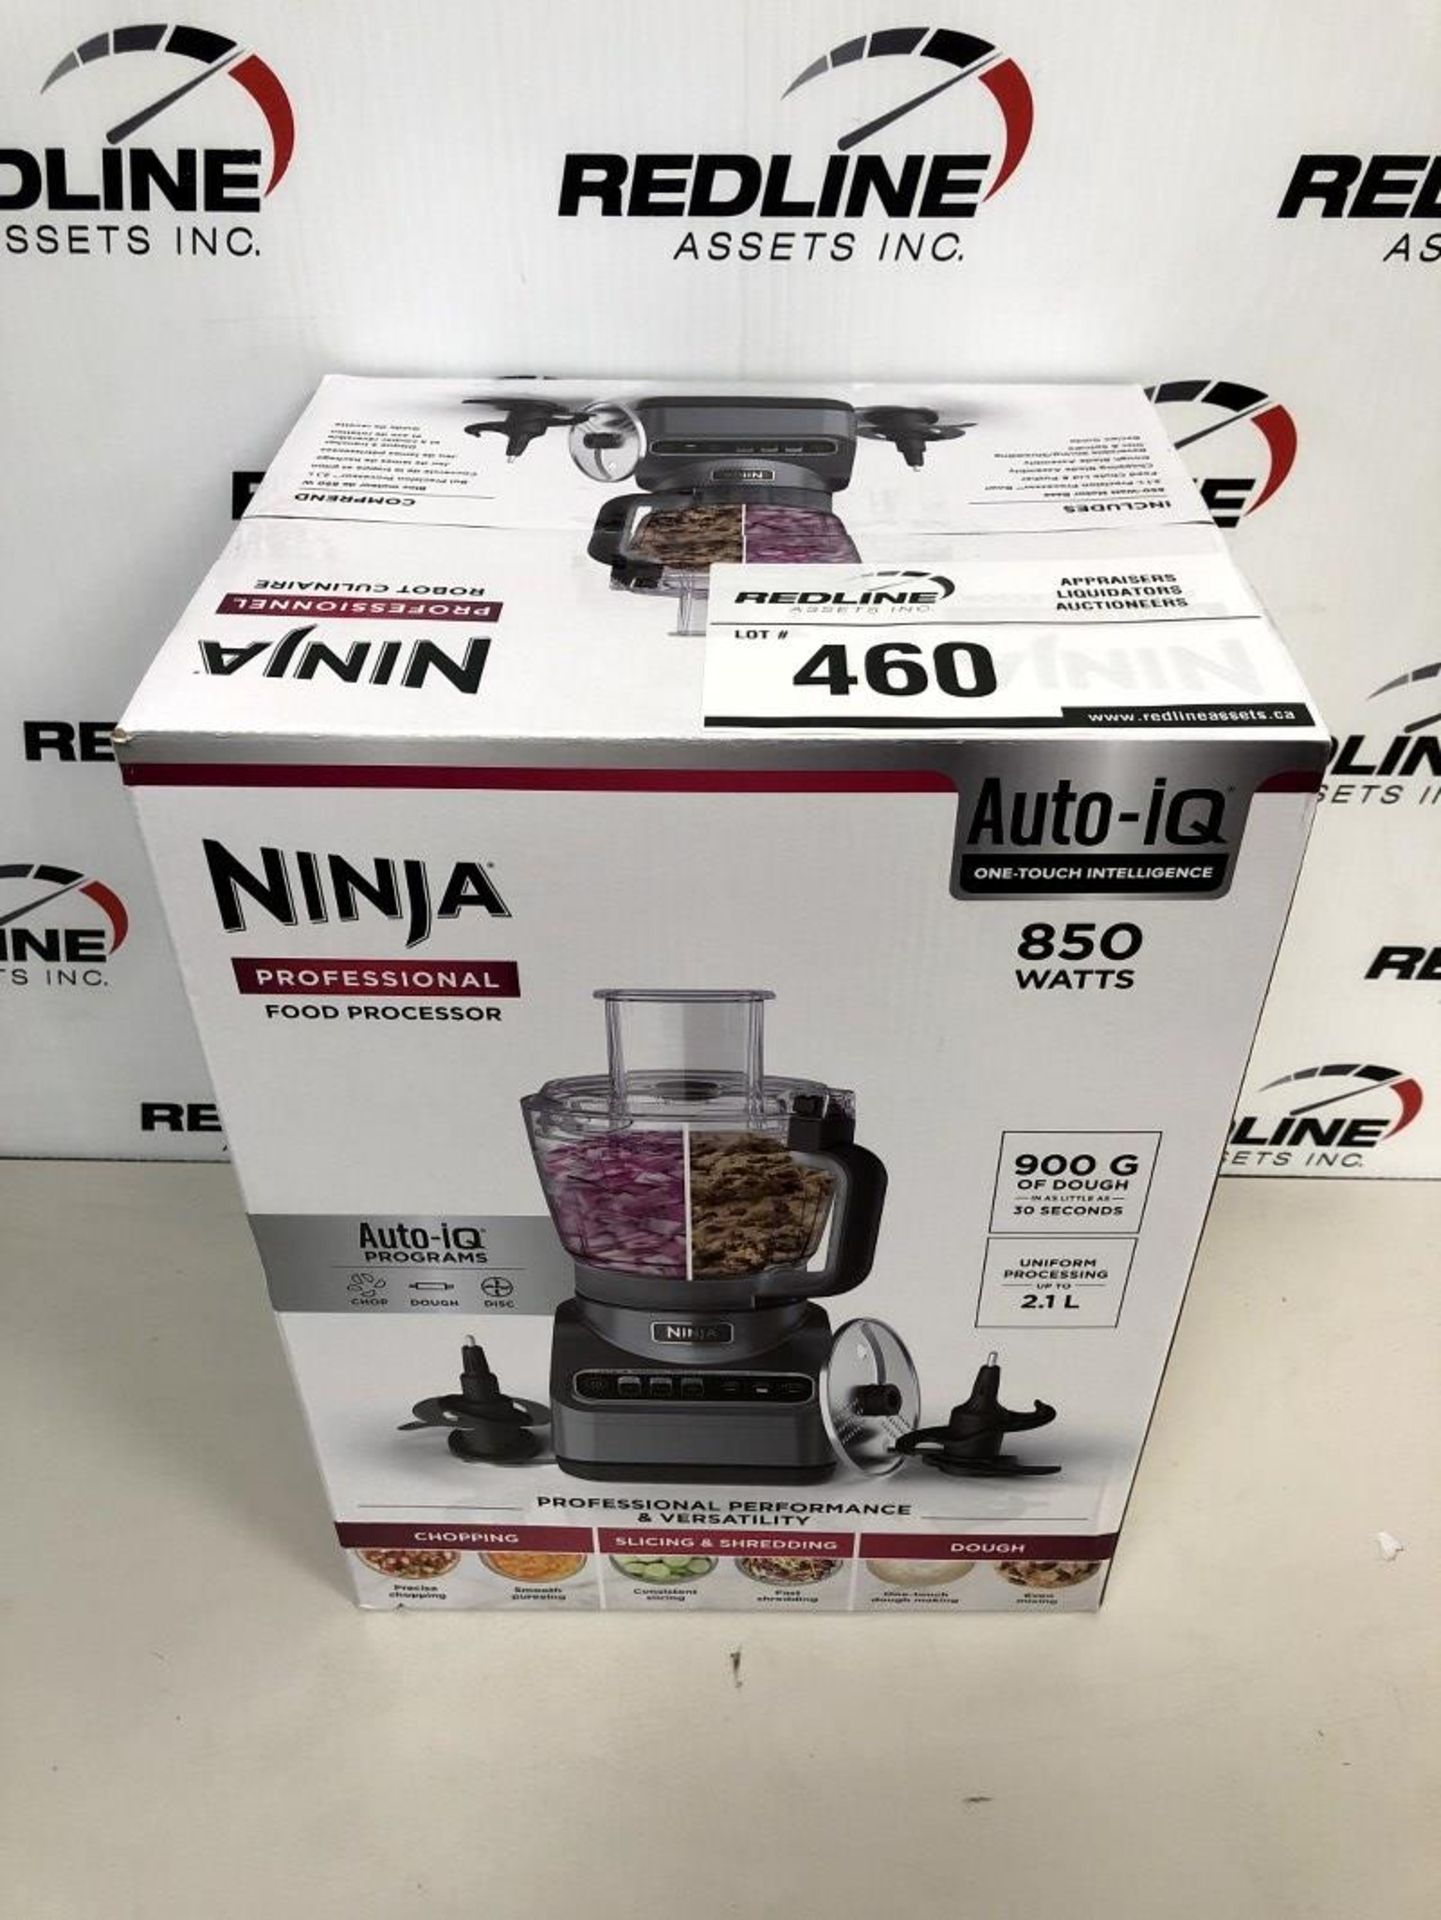 Ninja - Professional Food Processor - 900G 850 Watts